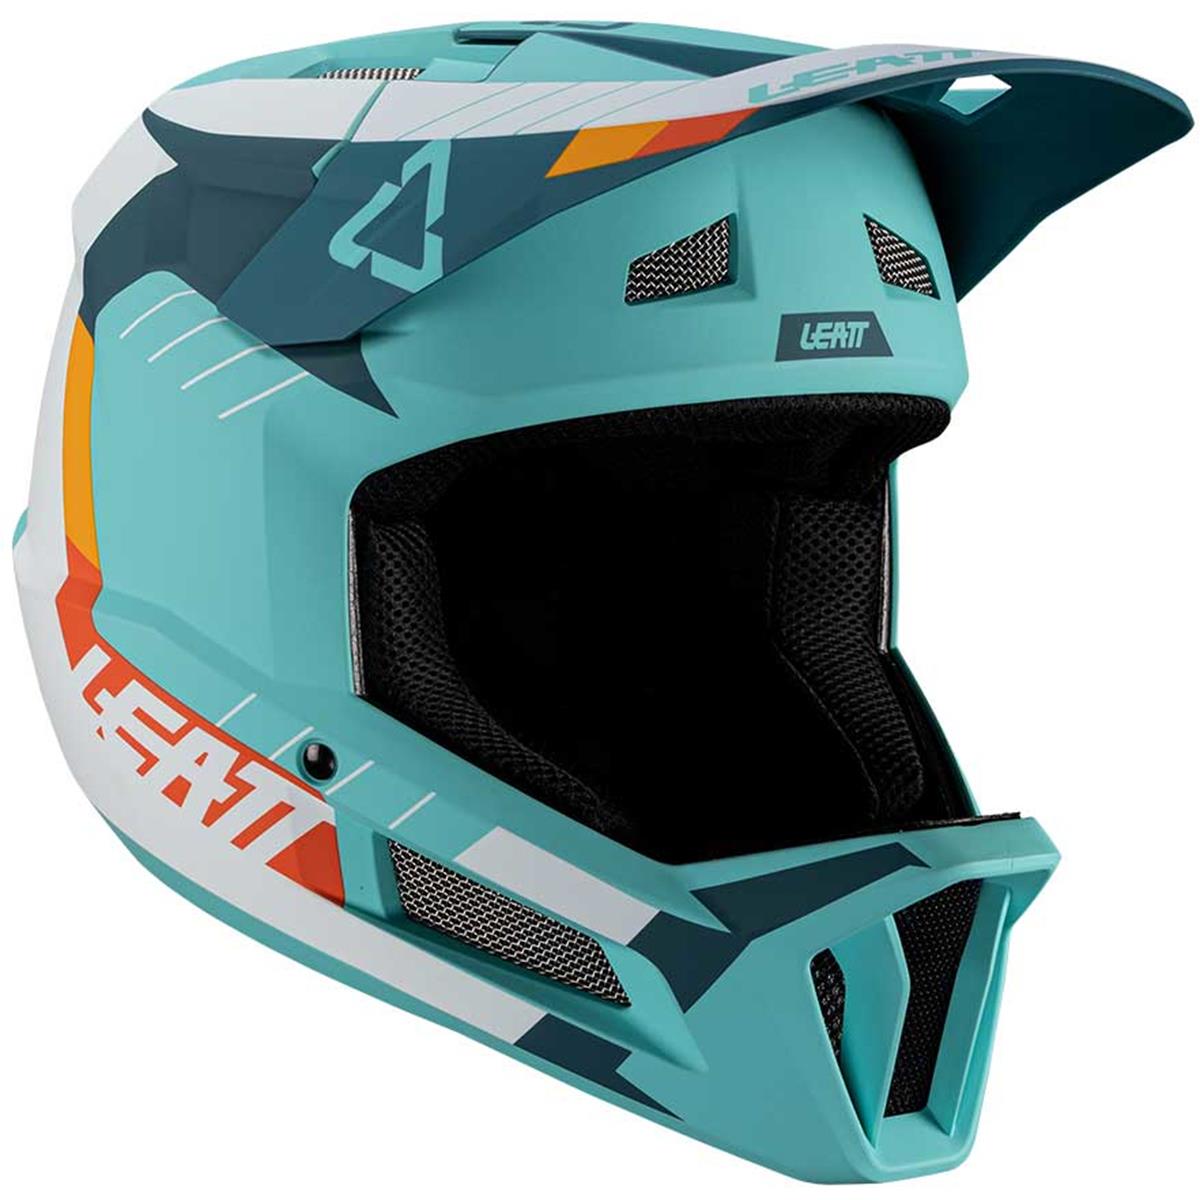 Leatt Downhill MTB Helmet 2.0 Gravity Fuel